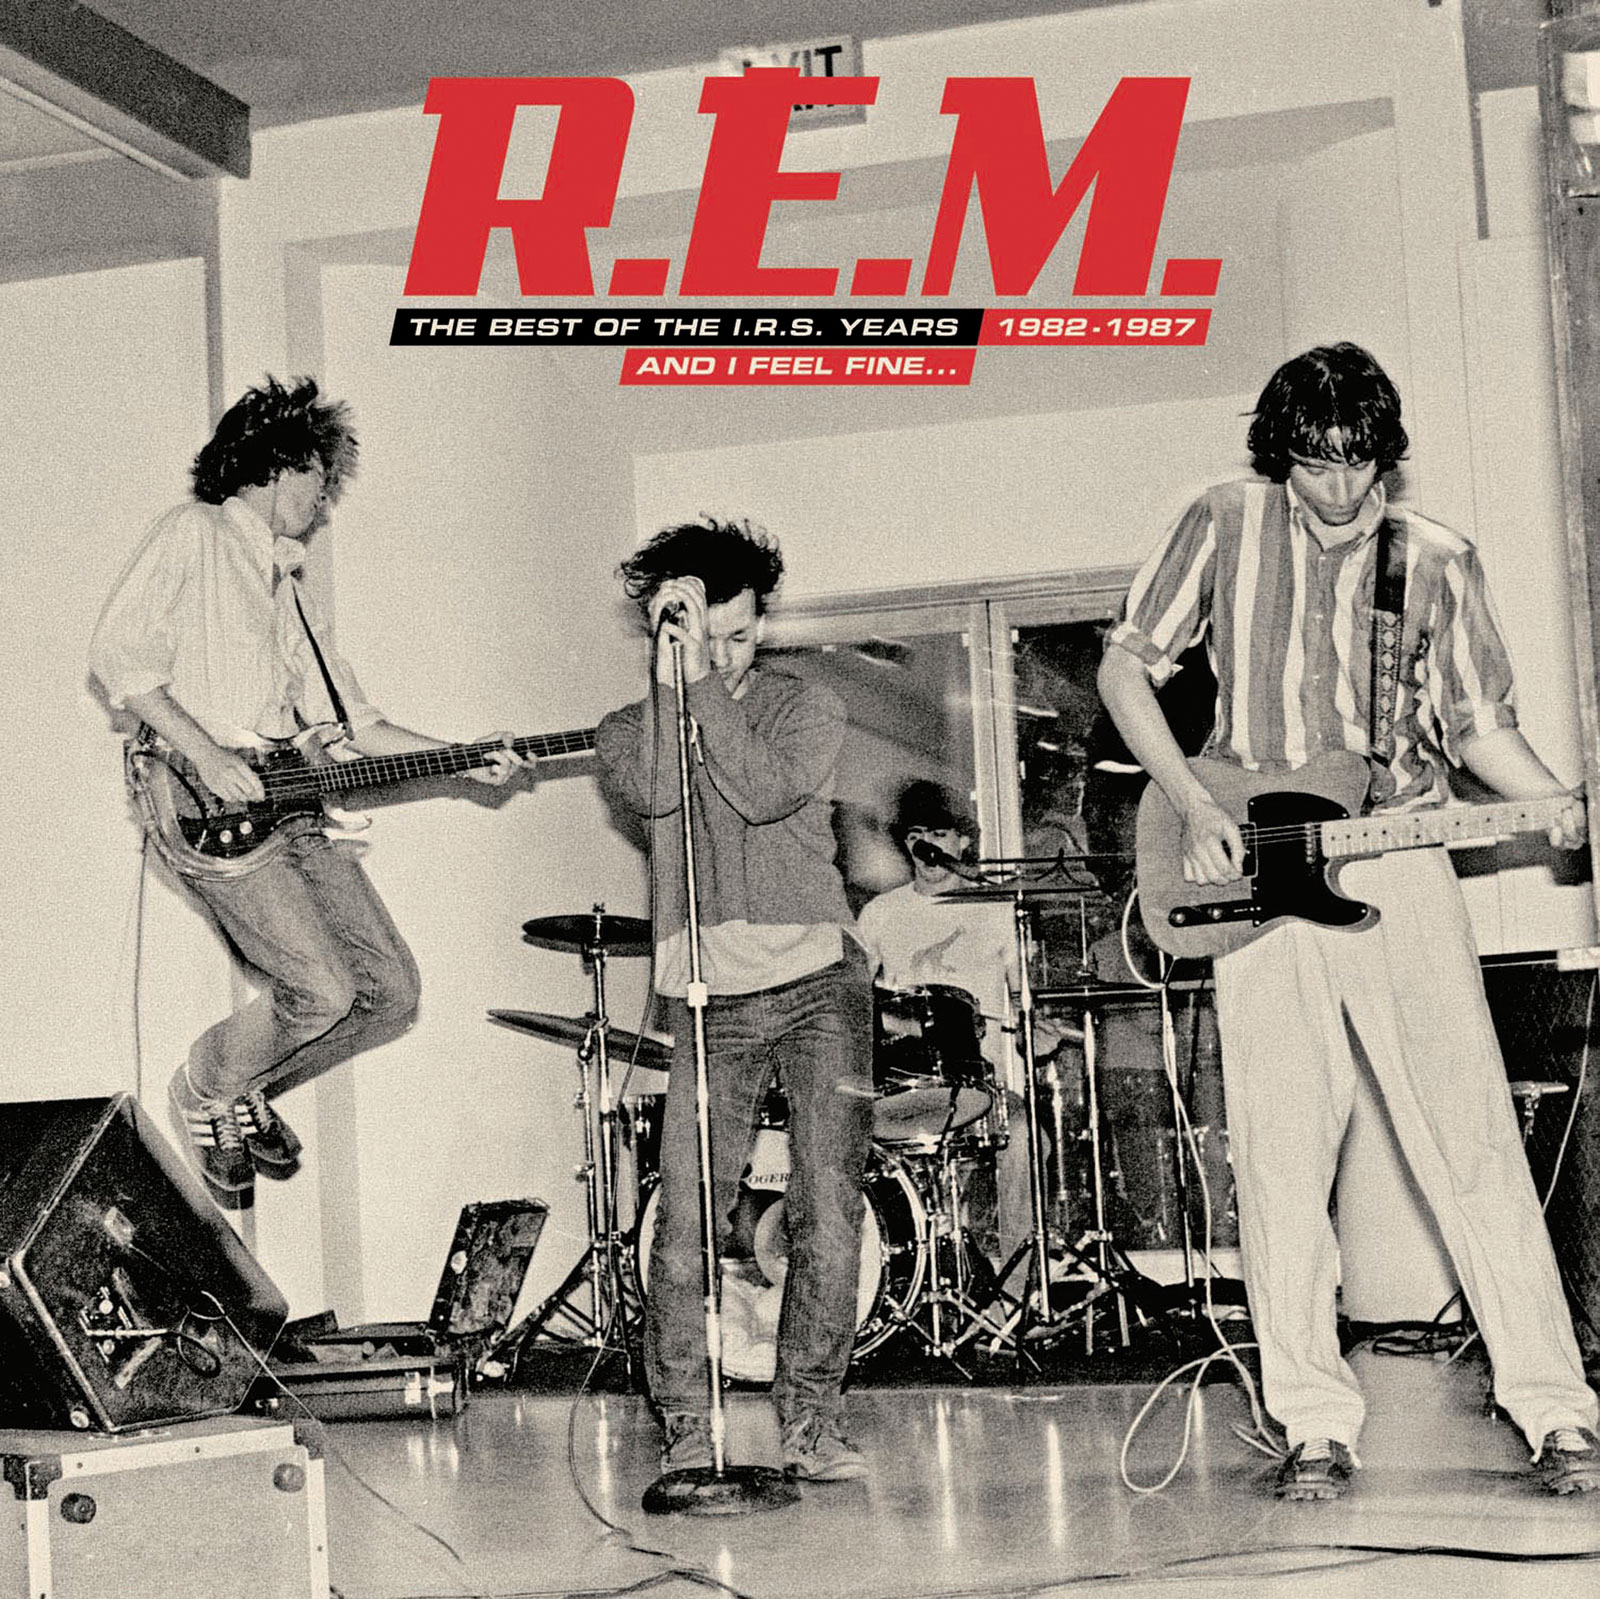 R.E.M - AND I FEEL FINE: THE BEST OF THE I.R.S. YEARS 1982-1987 